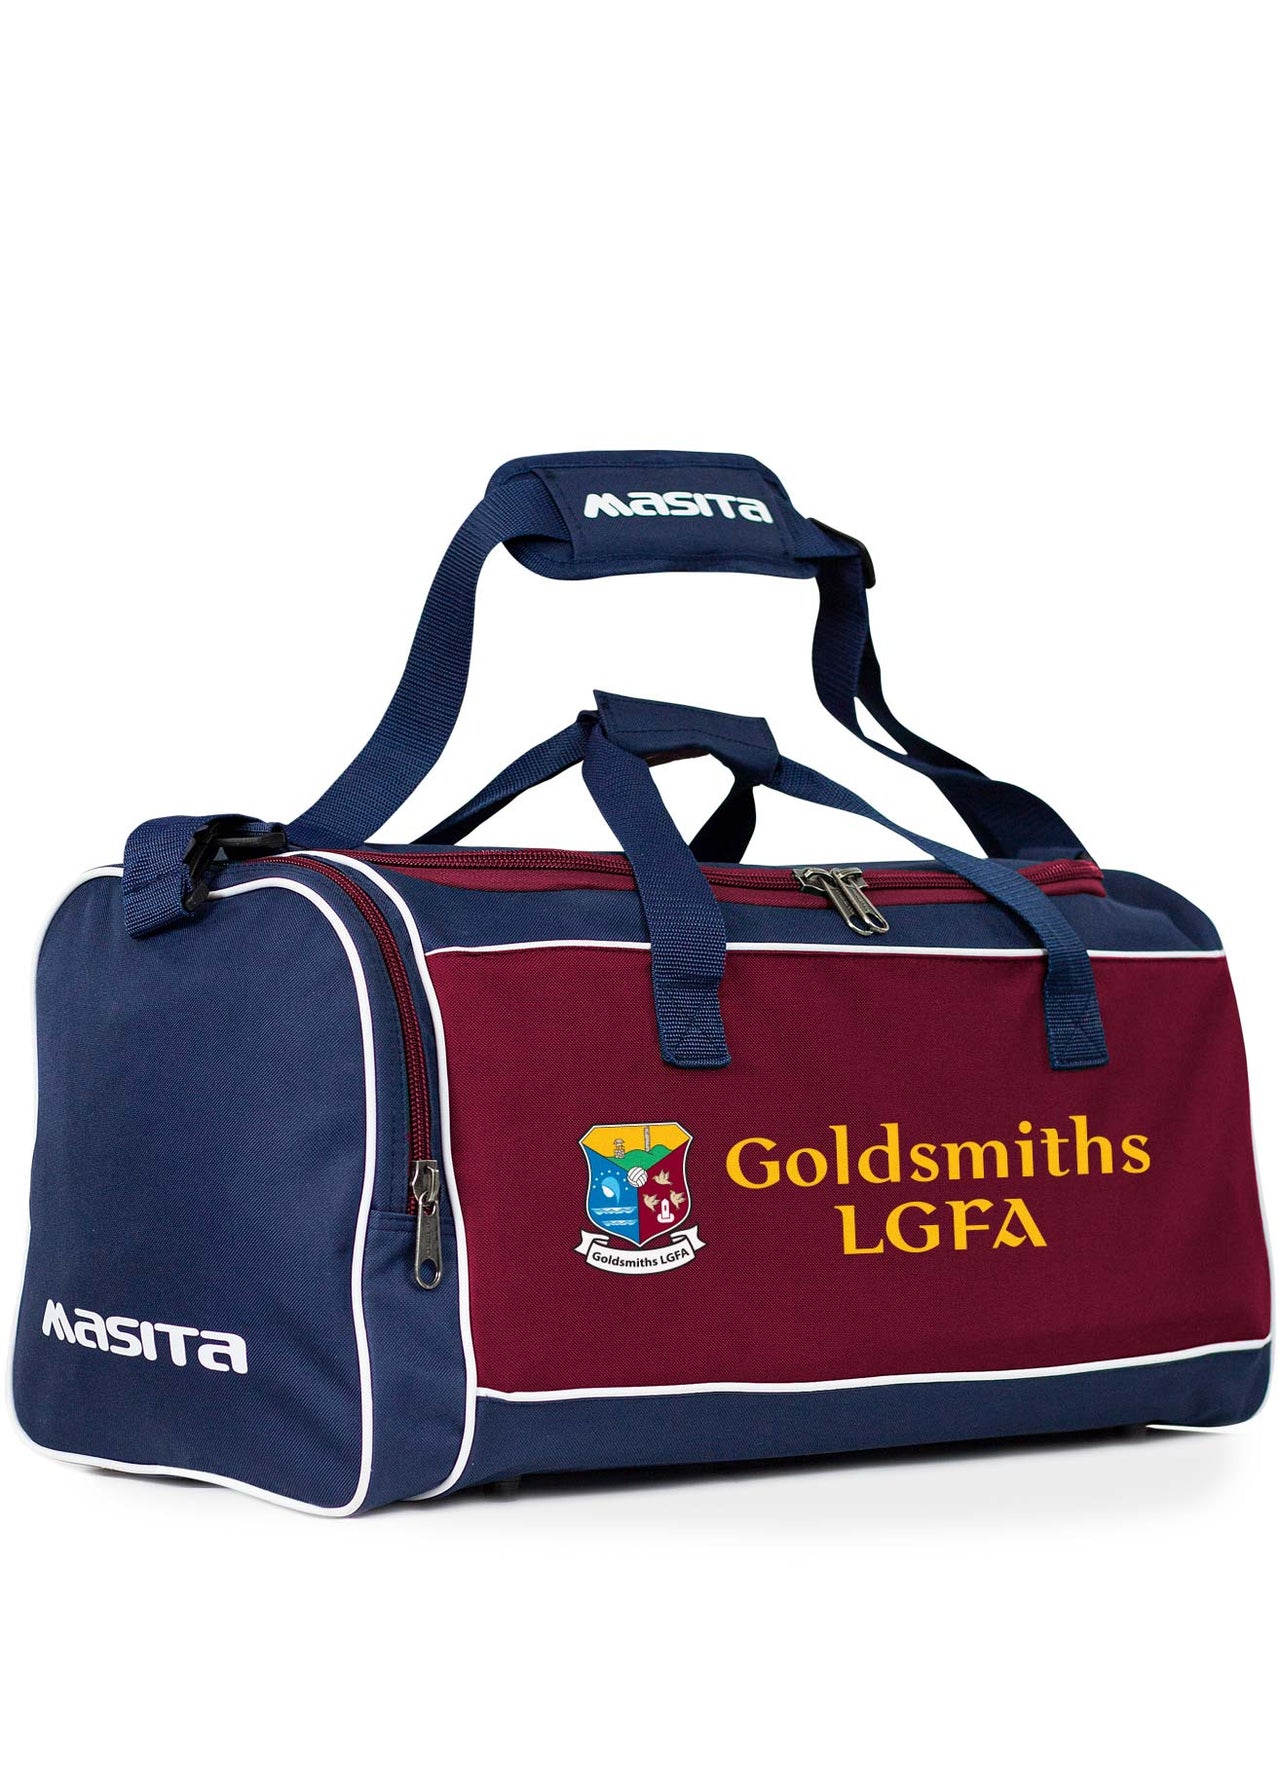 Goldsmiths LGFA Forza Bag Medium